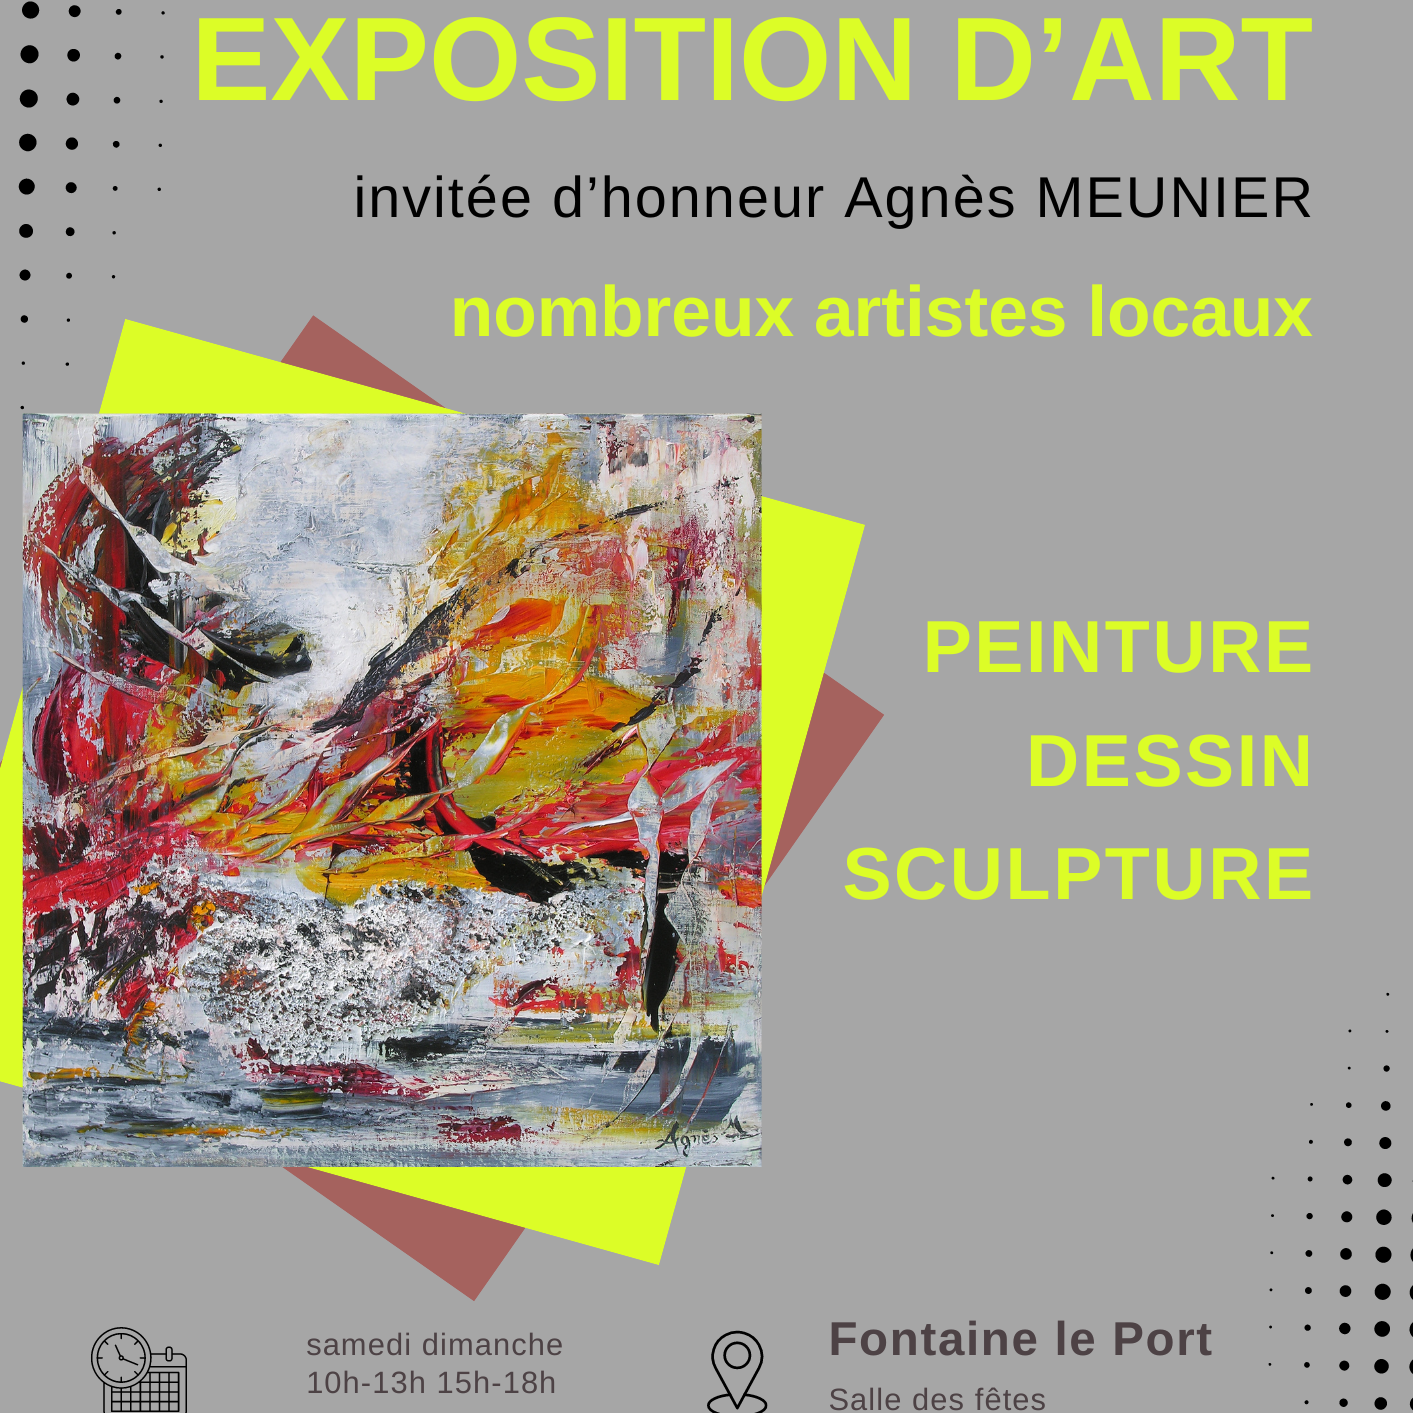 L'exposition d'ART du Comité des Fêtes de Fontaine-le-Port aura lieu début mai dans la salle des fêtes. Les inscriptions sont closes.